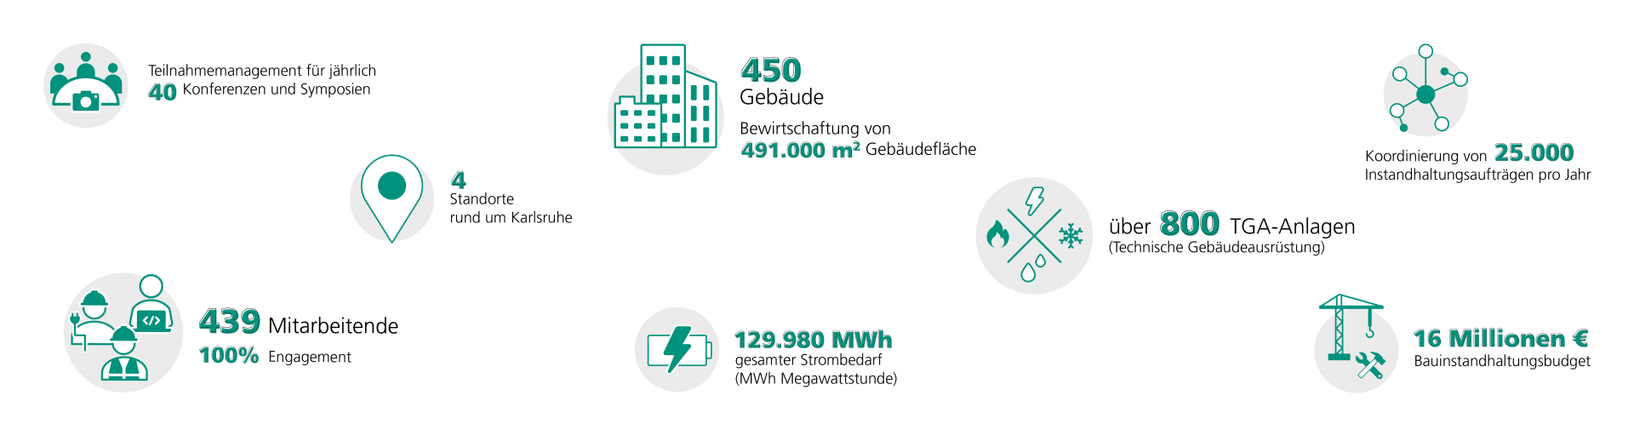 Teilnahmemanagement für 40 Veranstaltungen/Jahr, Bewirtschaftung von 450 Gebäuden, 25.000 Instandhaltungsaufträgen/Jahr, 4 Standorte bei Karlsruhe, ca. 800 TGA-Anlagen, 439 Mitarbeitende, 129.980 MWh Strombedarf, 16 Milionnen Euro Bauinstandhaltungsbudget